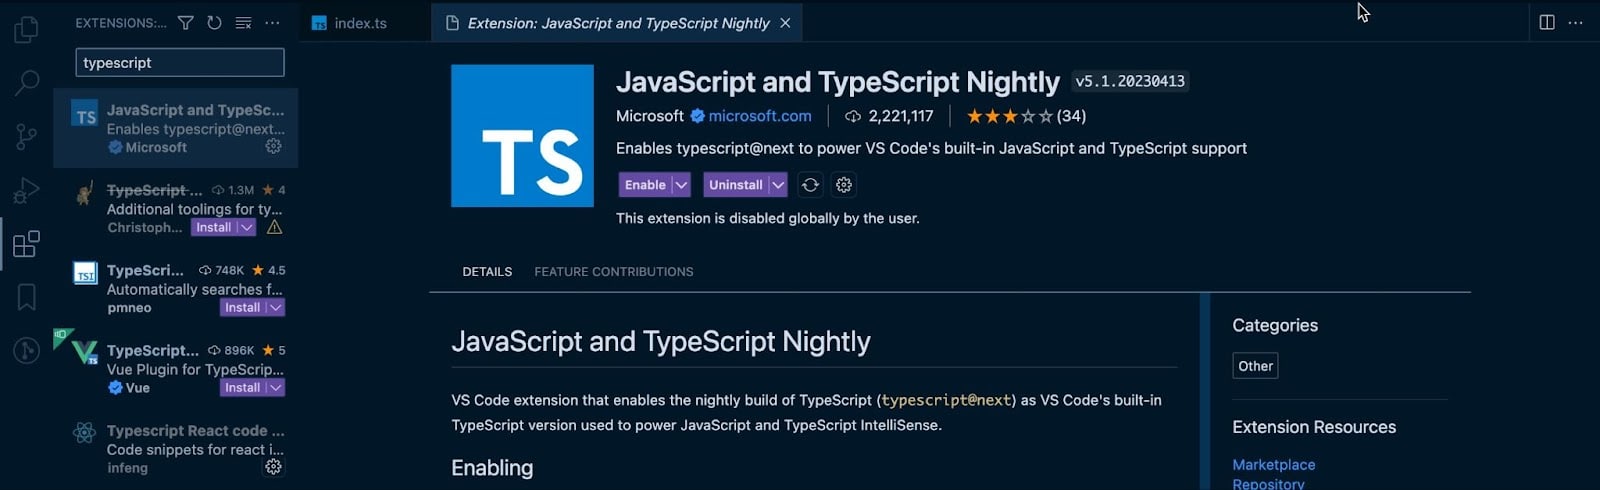 Extensión TypeScript de VS Code